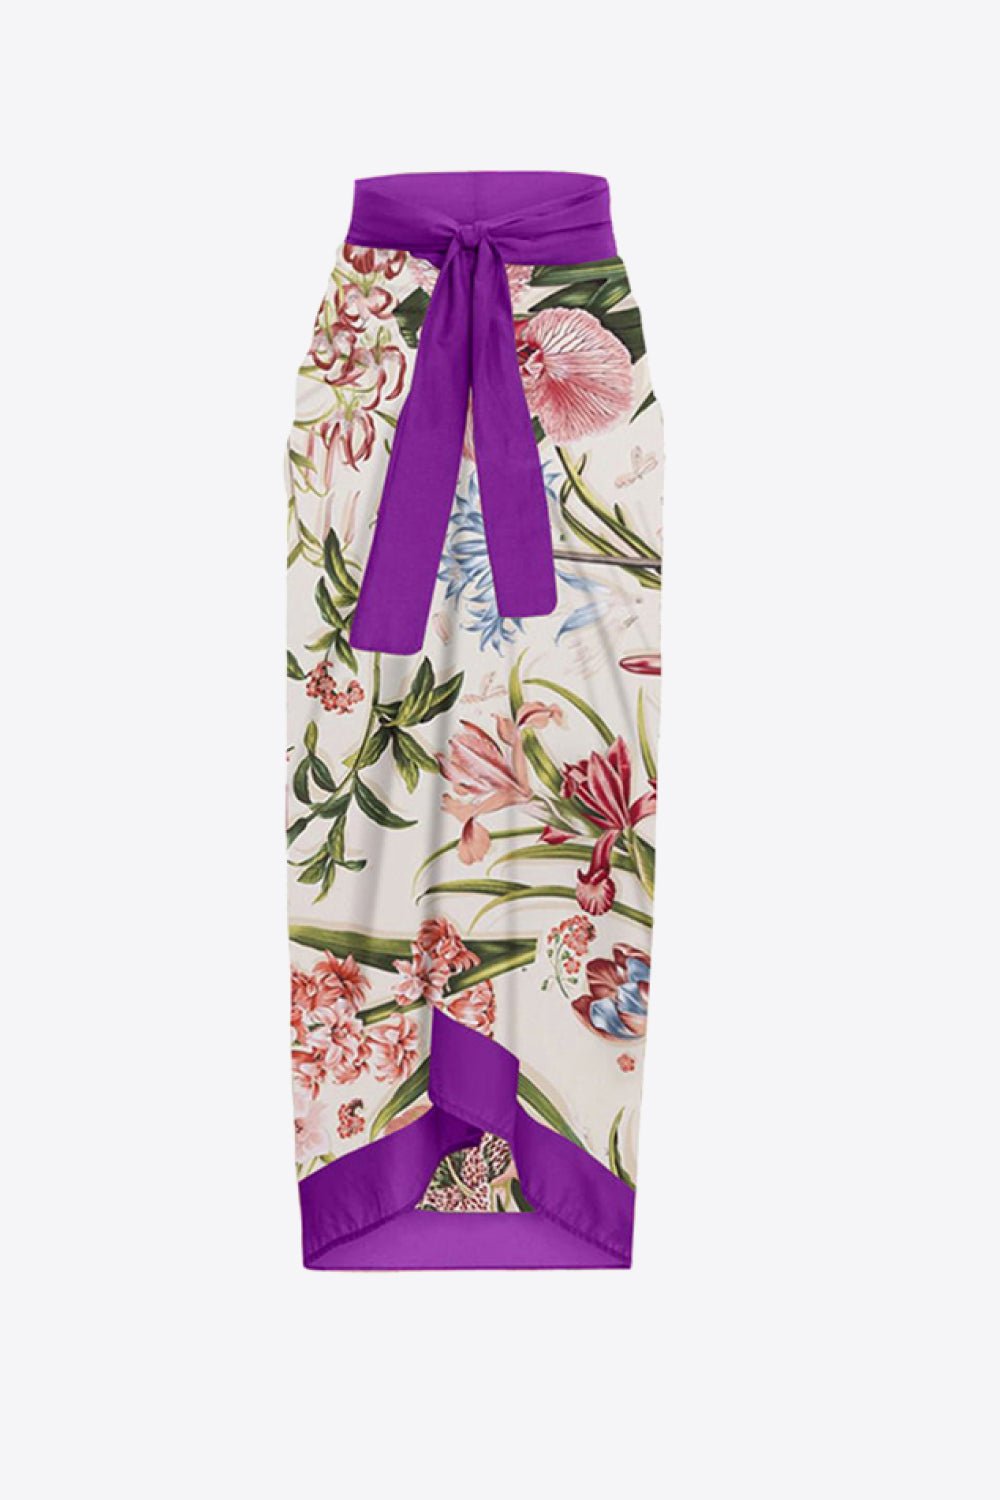 Women's Floral Tie Shoulder Two - Piece Swim Set - GirlSavvi